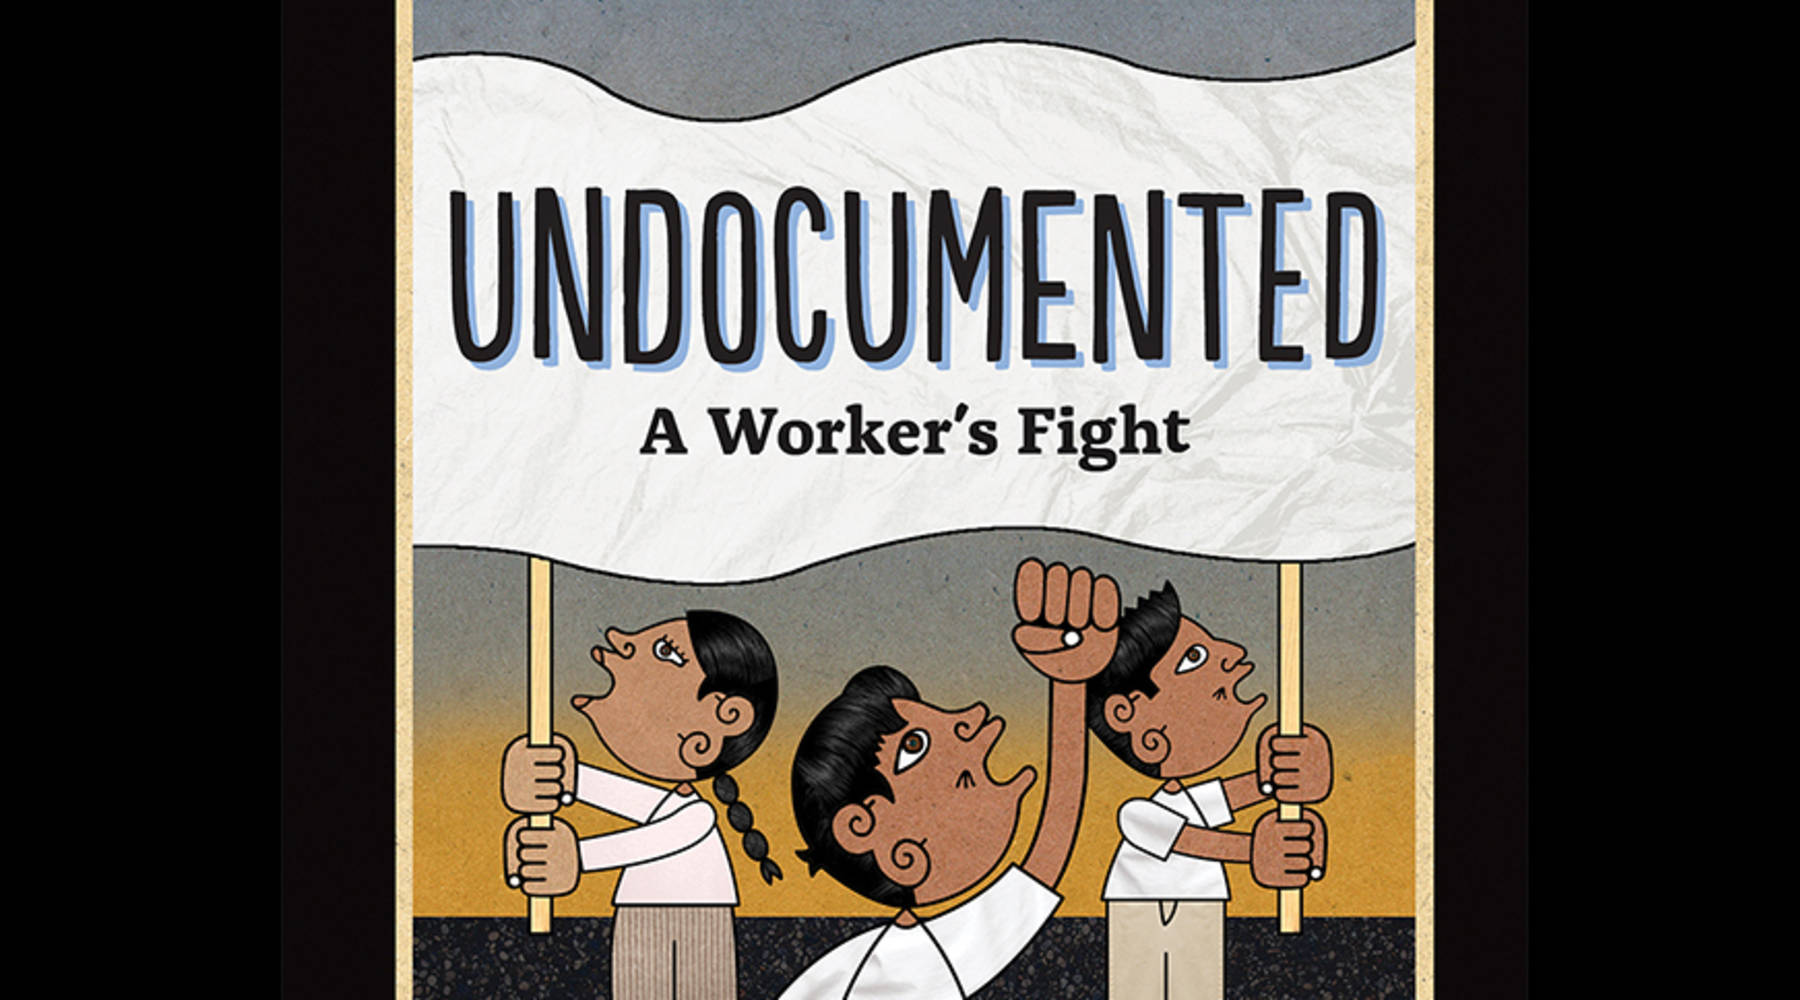 Undocumented by Duncan Tonatiuh